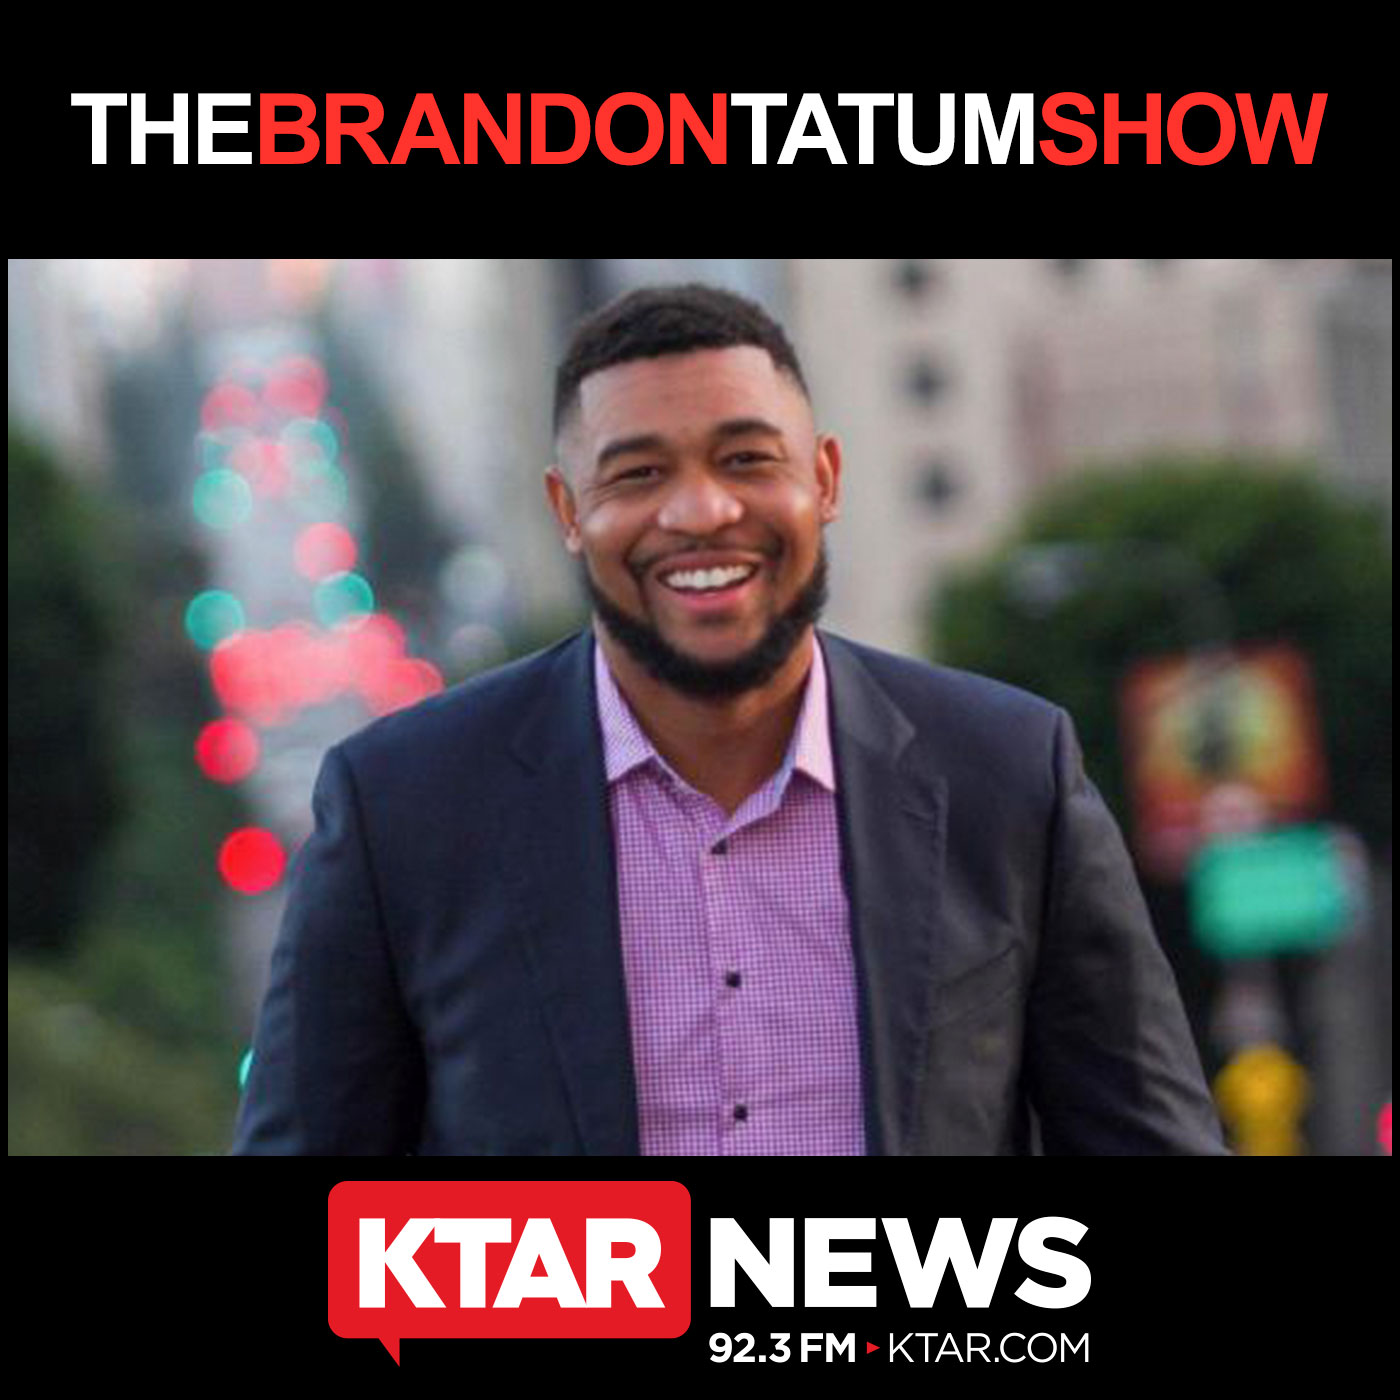 November 22, 2019 - The Brandon Tatum Show